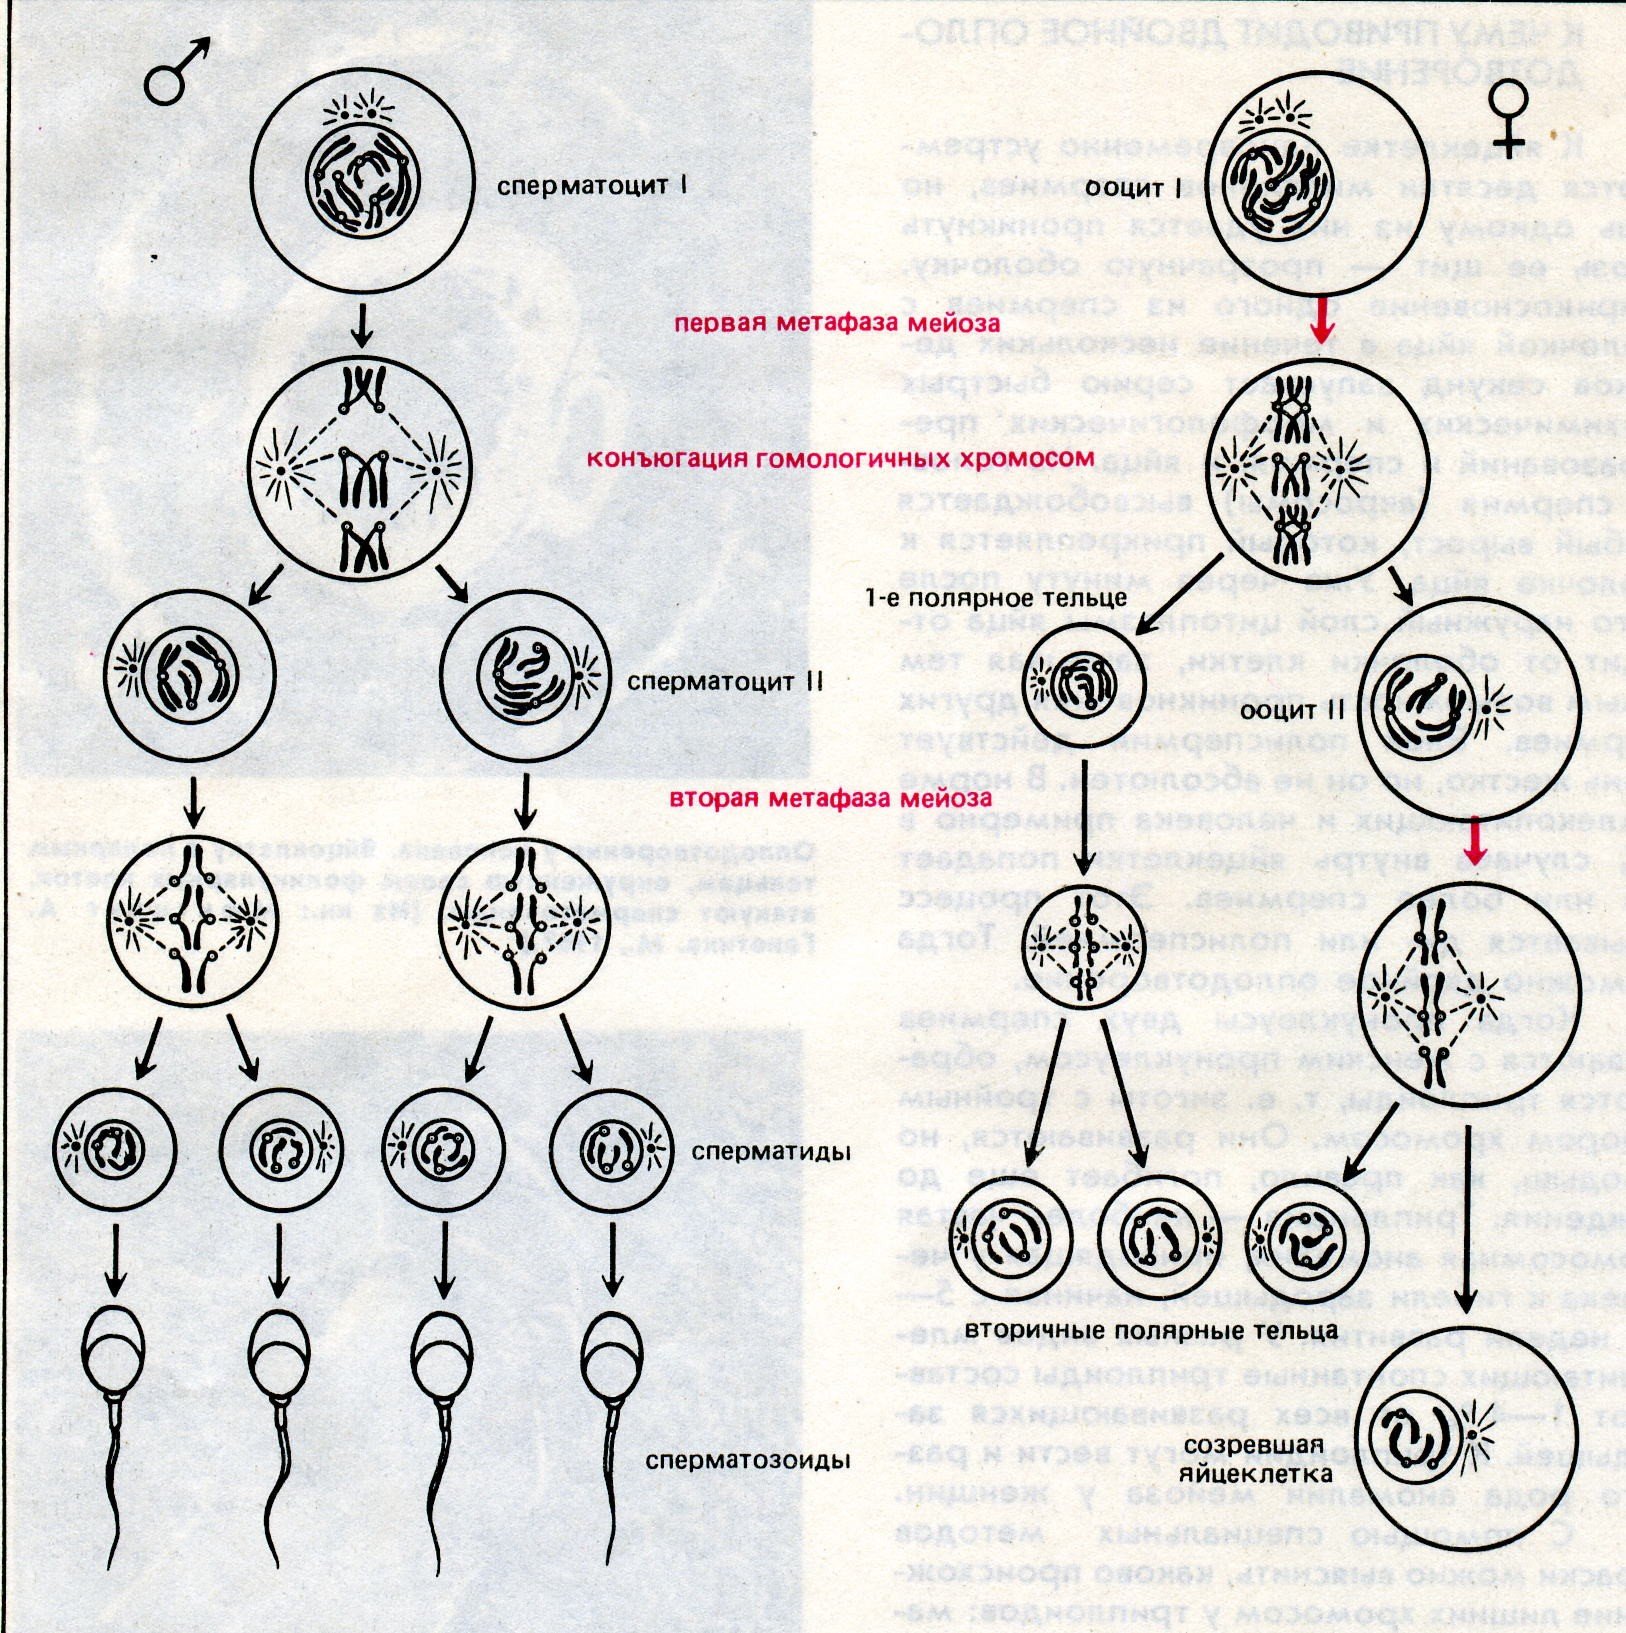 Каким номером на схеме обозначено мейотическое. Сперматогенез и оогенез. Этапы сперматогенеза схема. Яйцеклетка схема овогенеза. Схема основных этапов сперматогенеза и овогенеза.